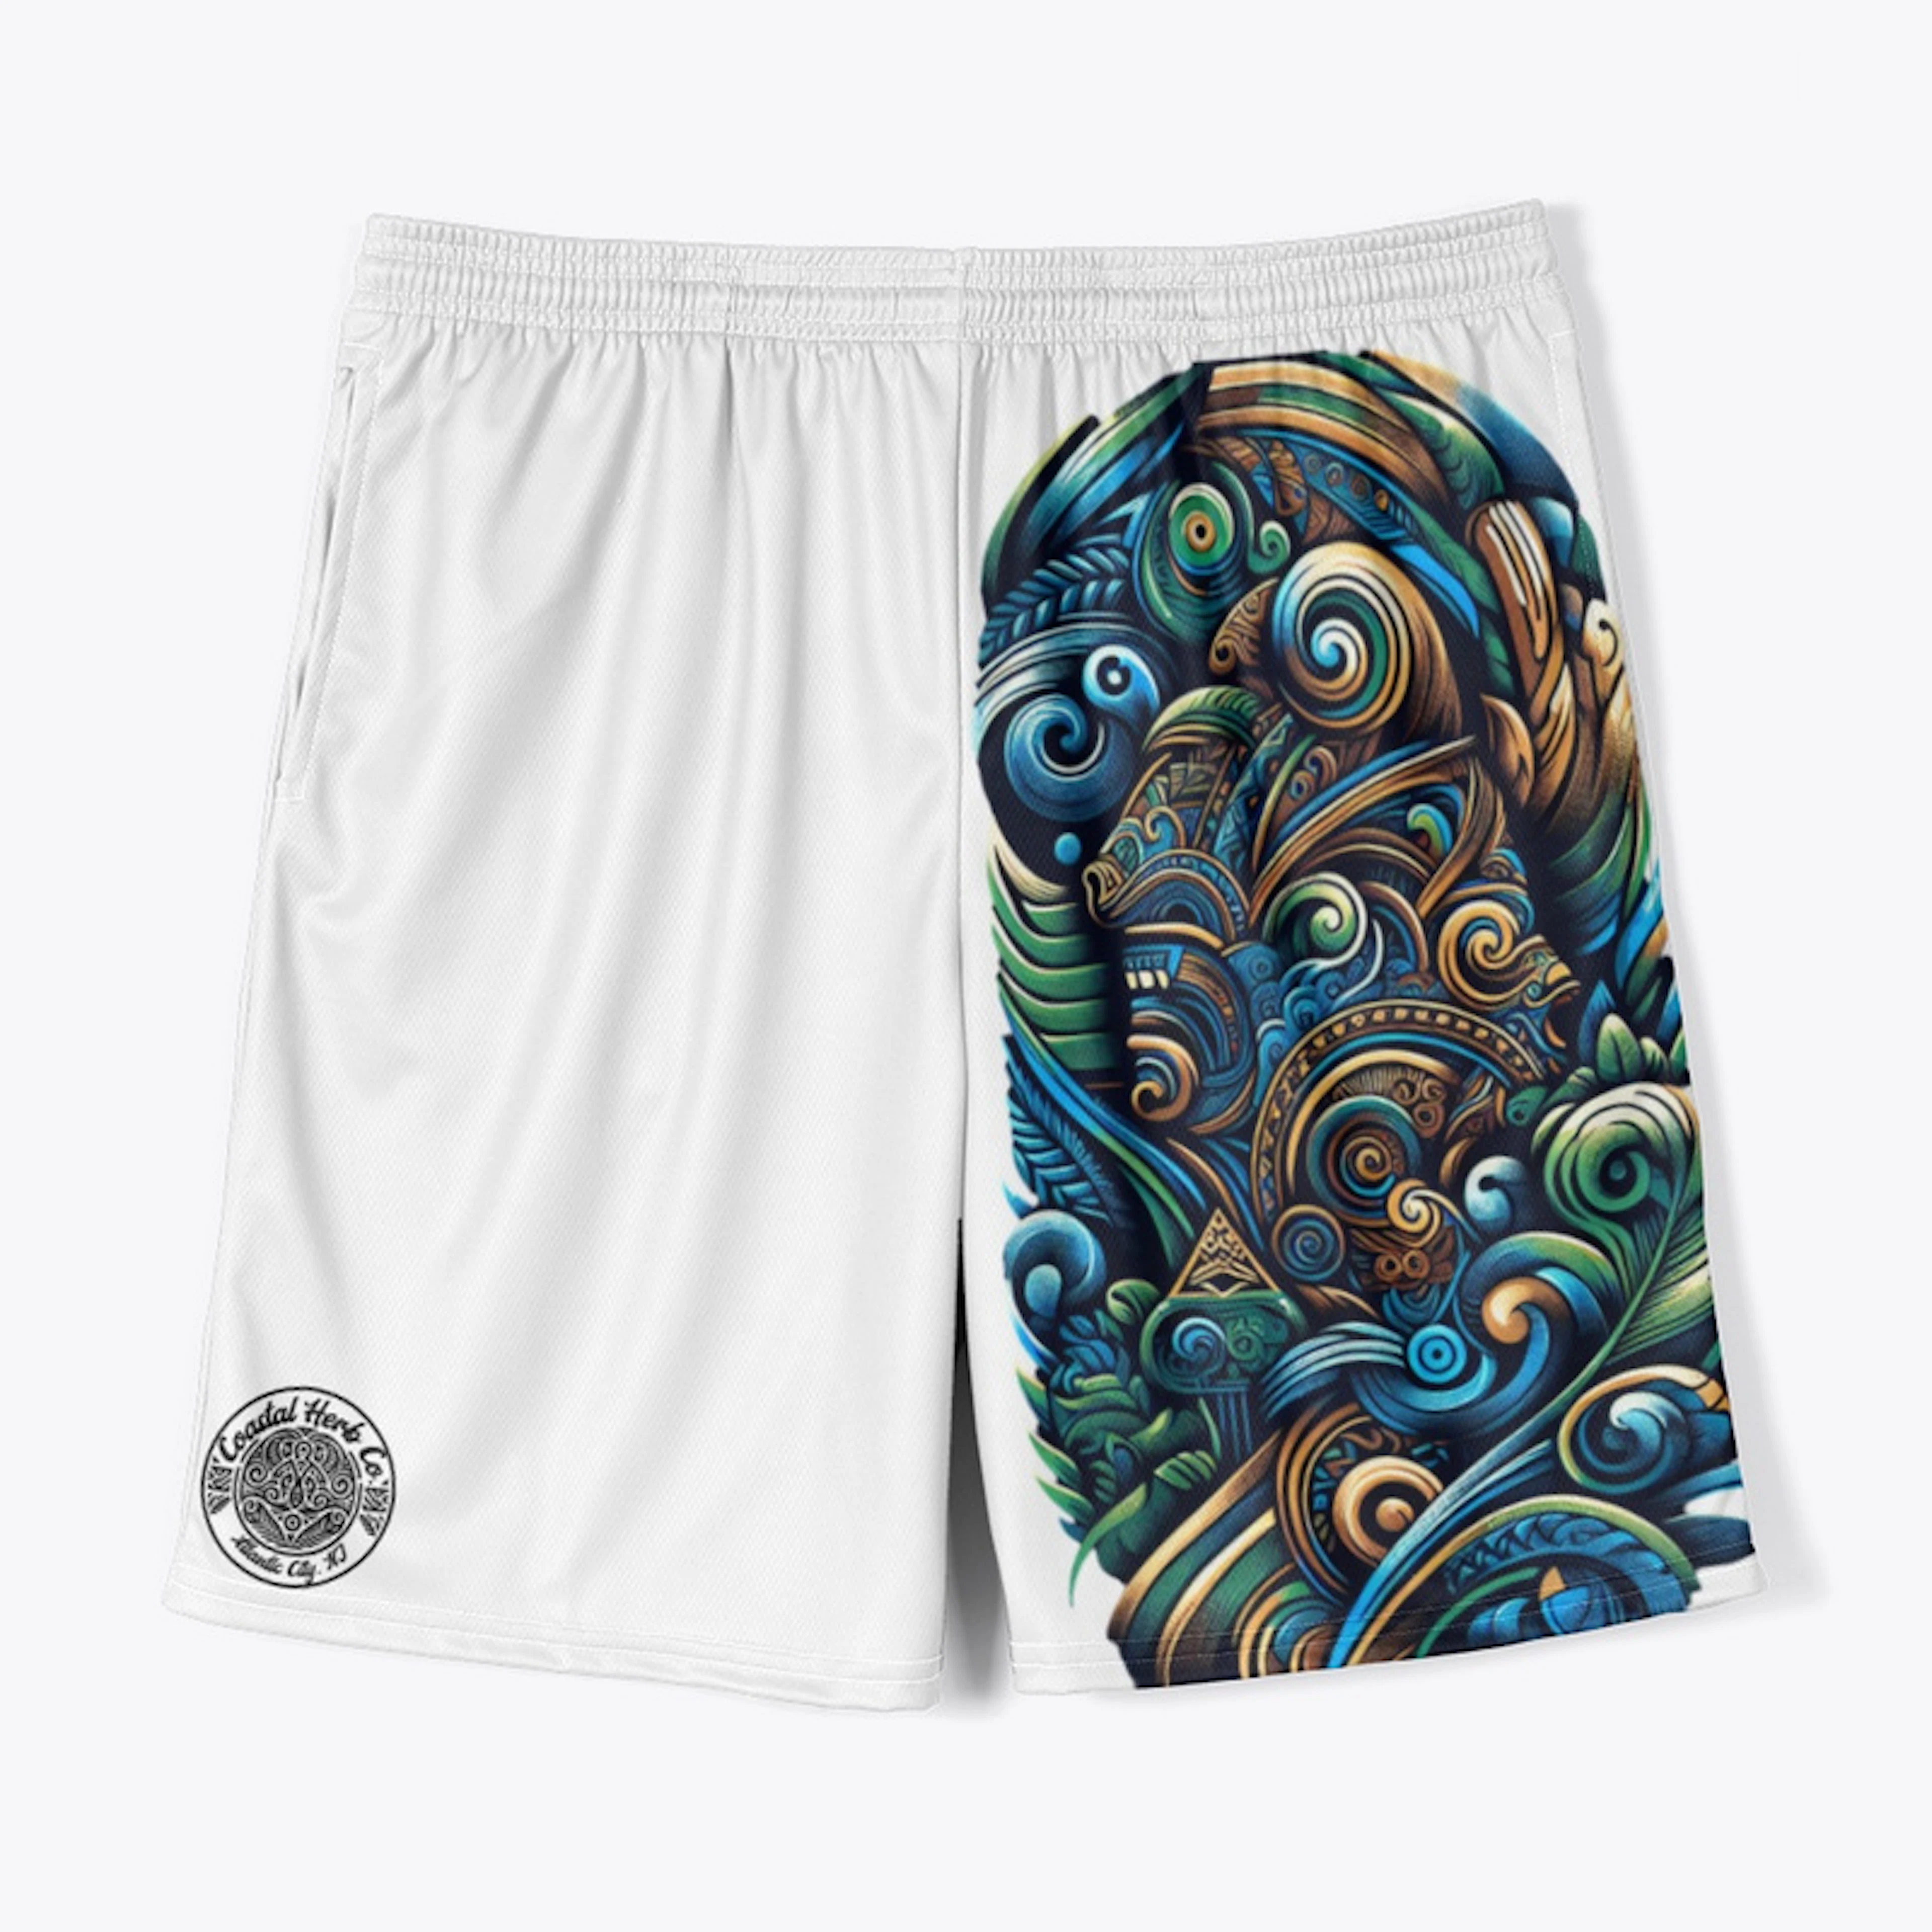 Maori Inspired Board Shorts